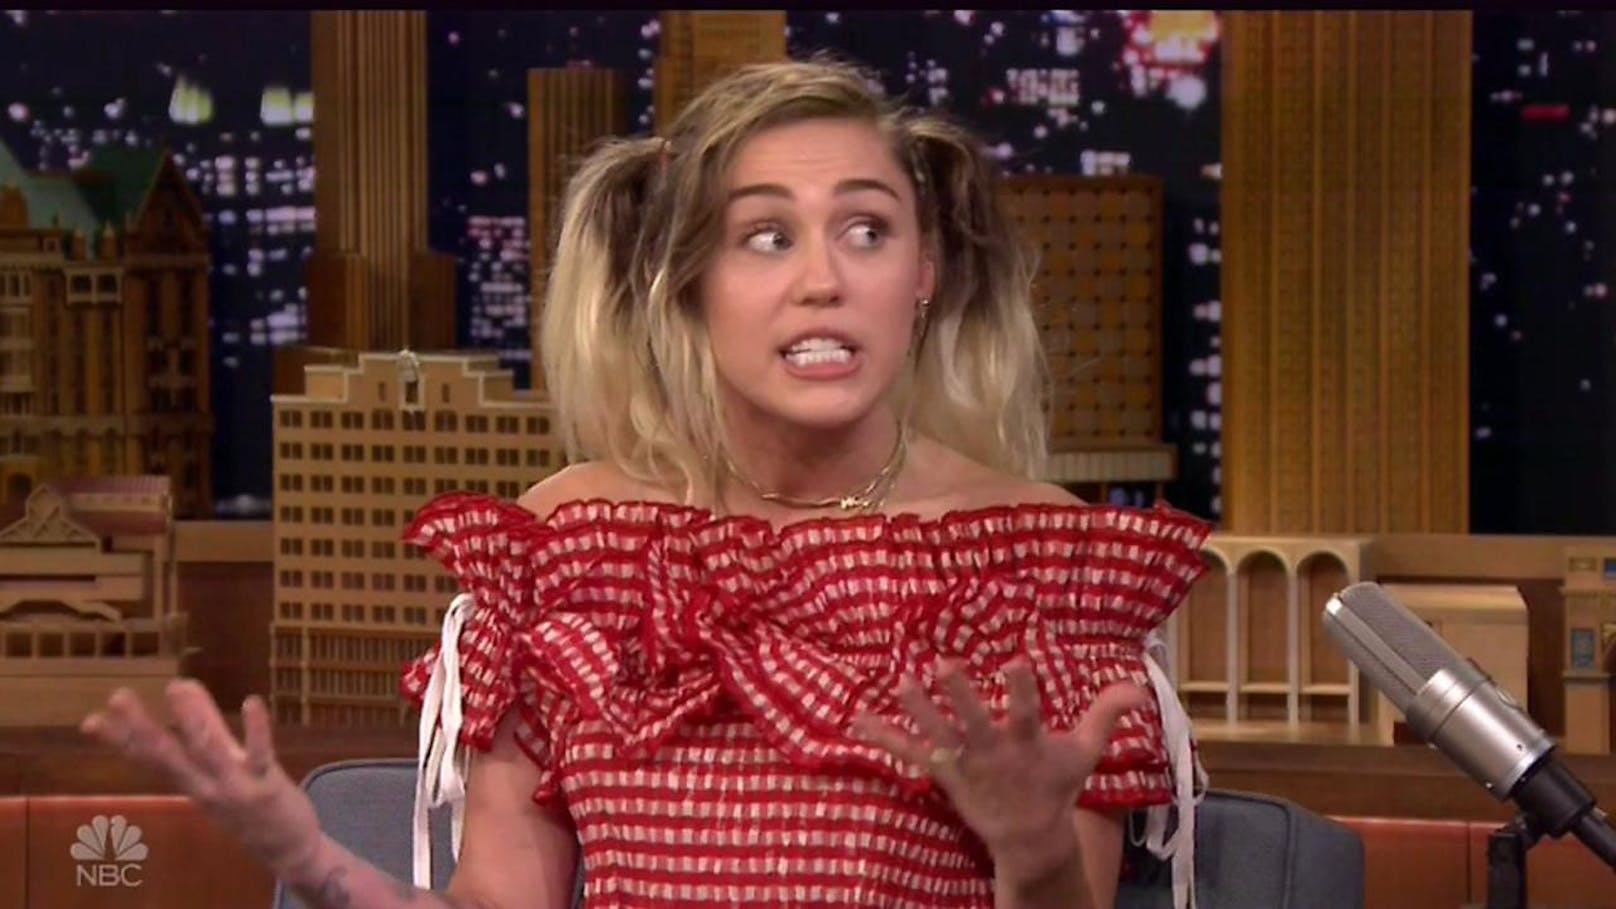 Miley Cyrus in "The Tonight Show". Host Jimmy Fallon war einer der Gründe, warum sie für eine Zeit lang zu kiffen aufhörte.